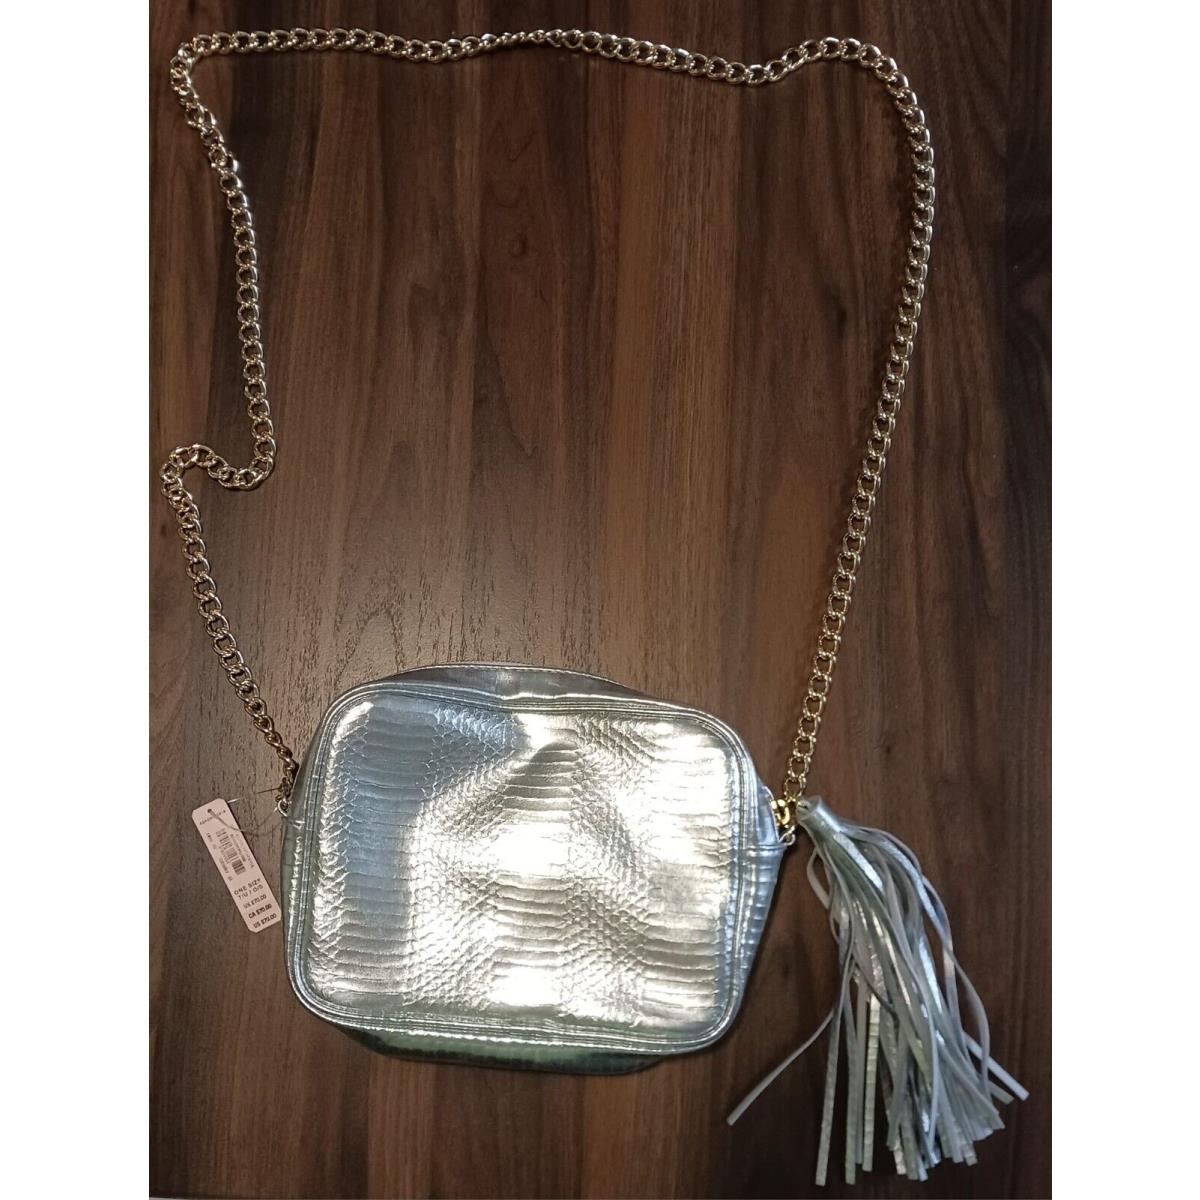 Victoria's Secret  bag  Victoria Secret One - Gold Handle/Strap, Gold Lining, Gold Hardware 2